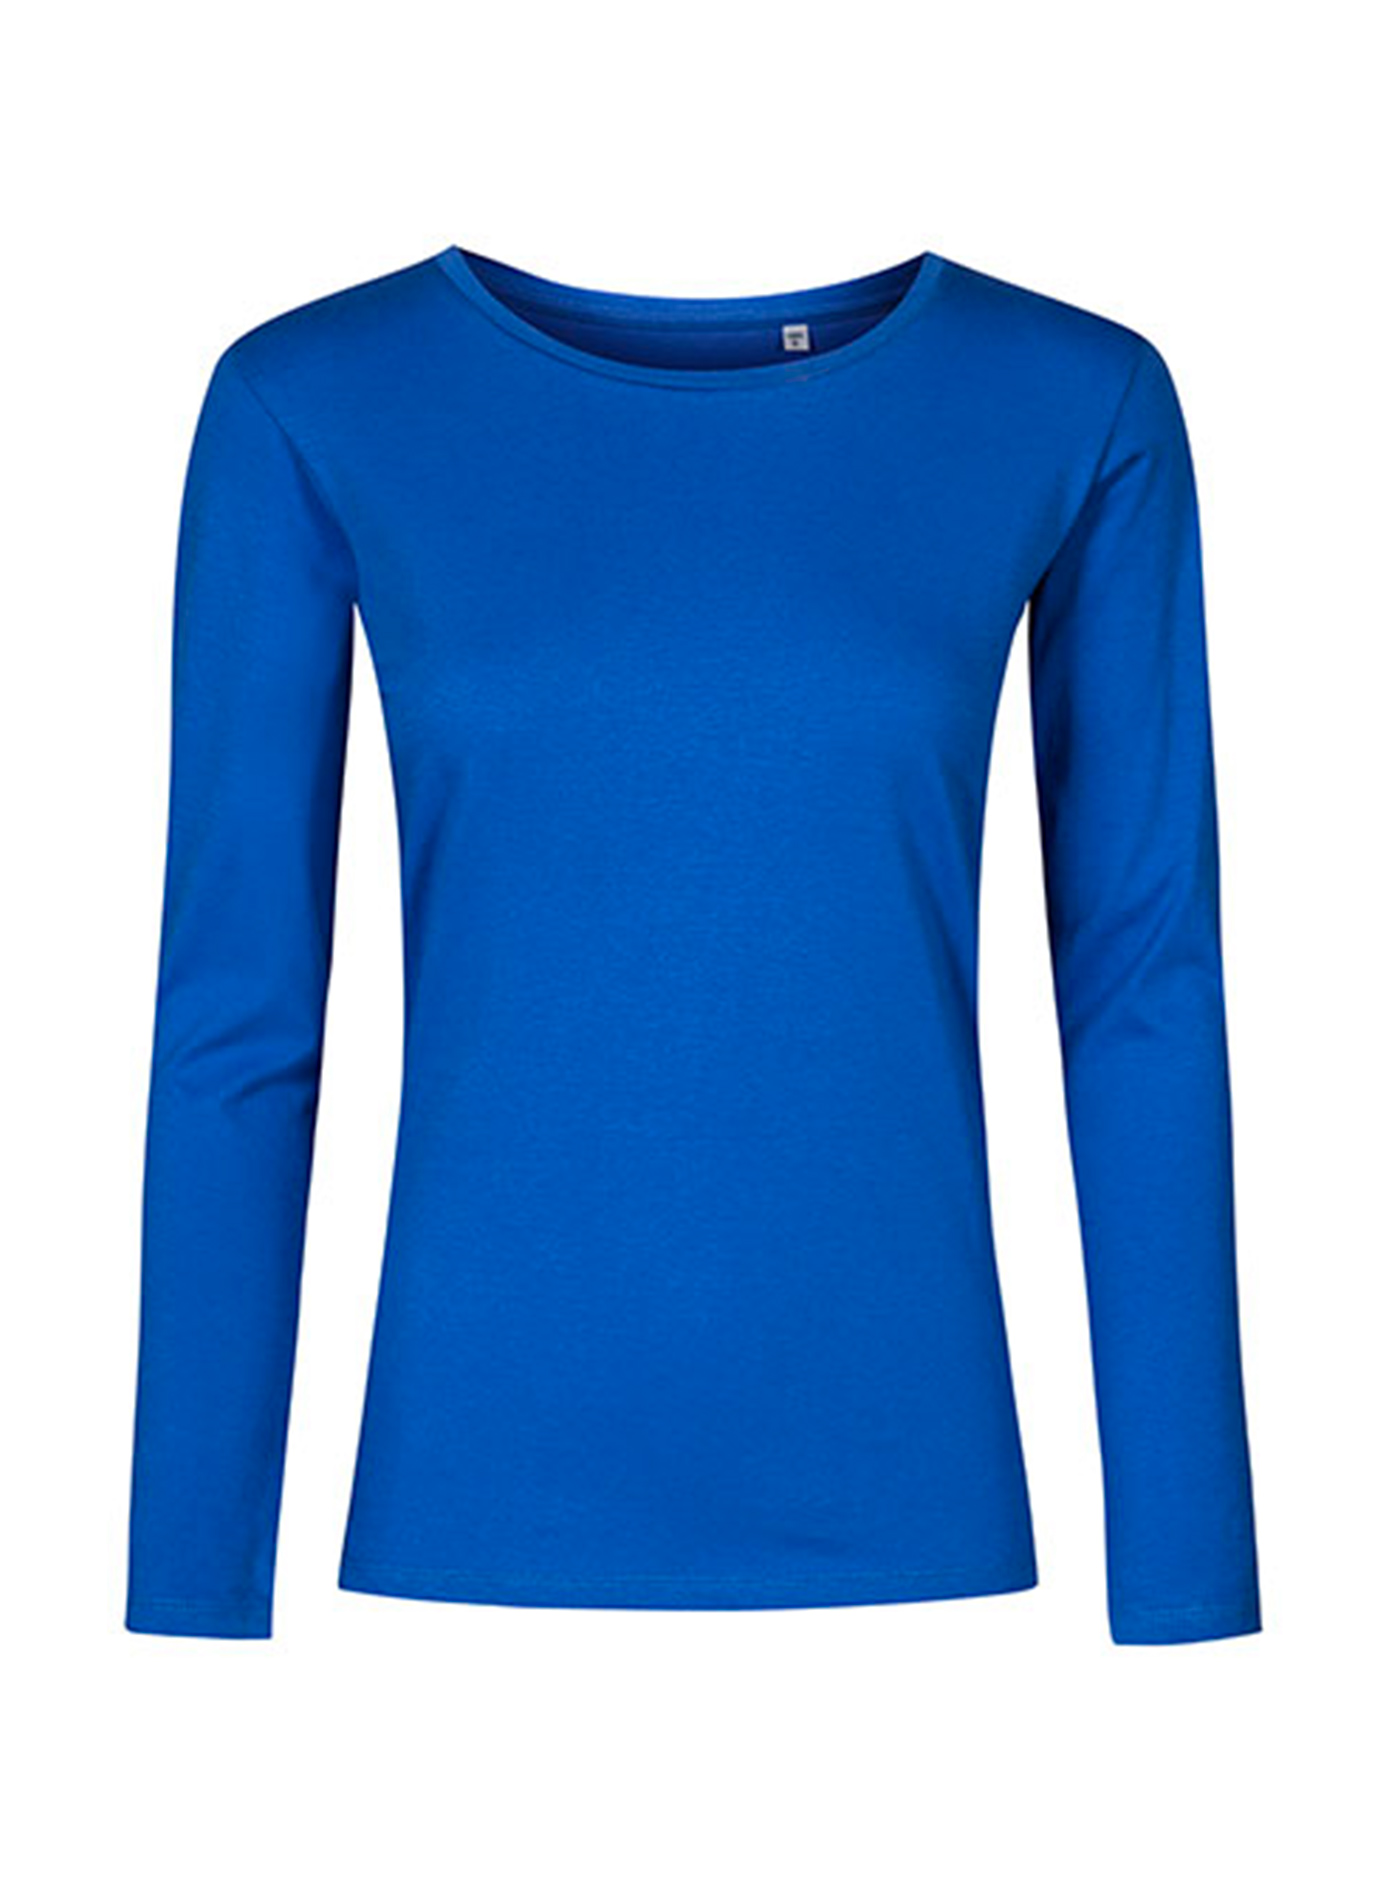 Dámské tričko s dlouhým rukávem s kulatým výstřihem Promodoro - Kobaltově modrá XL